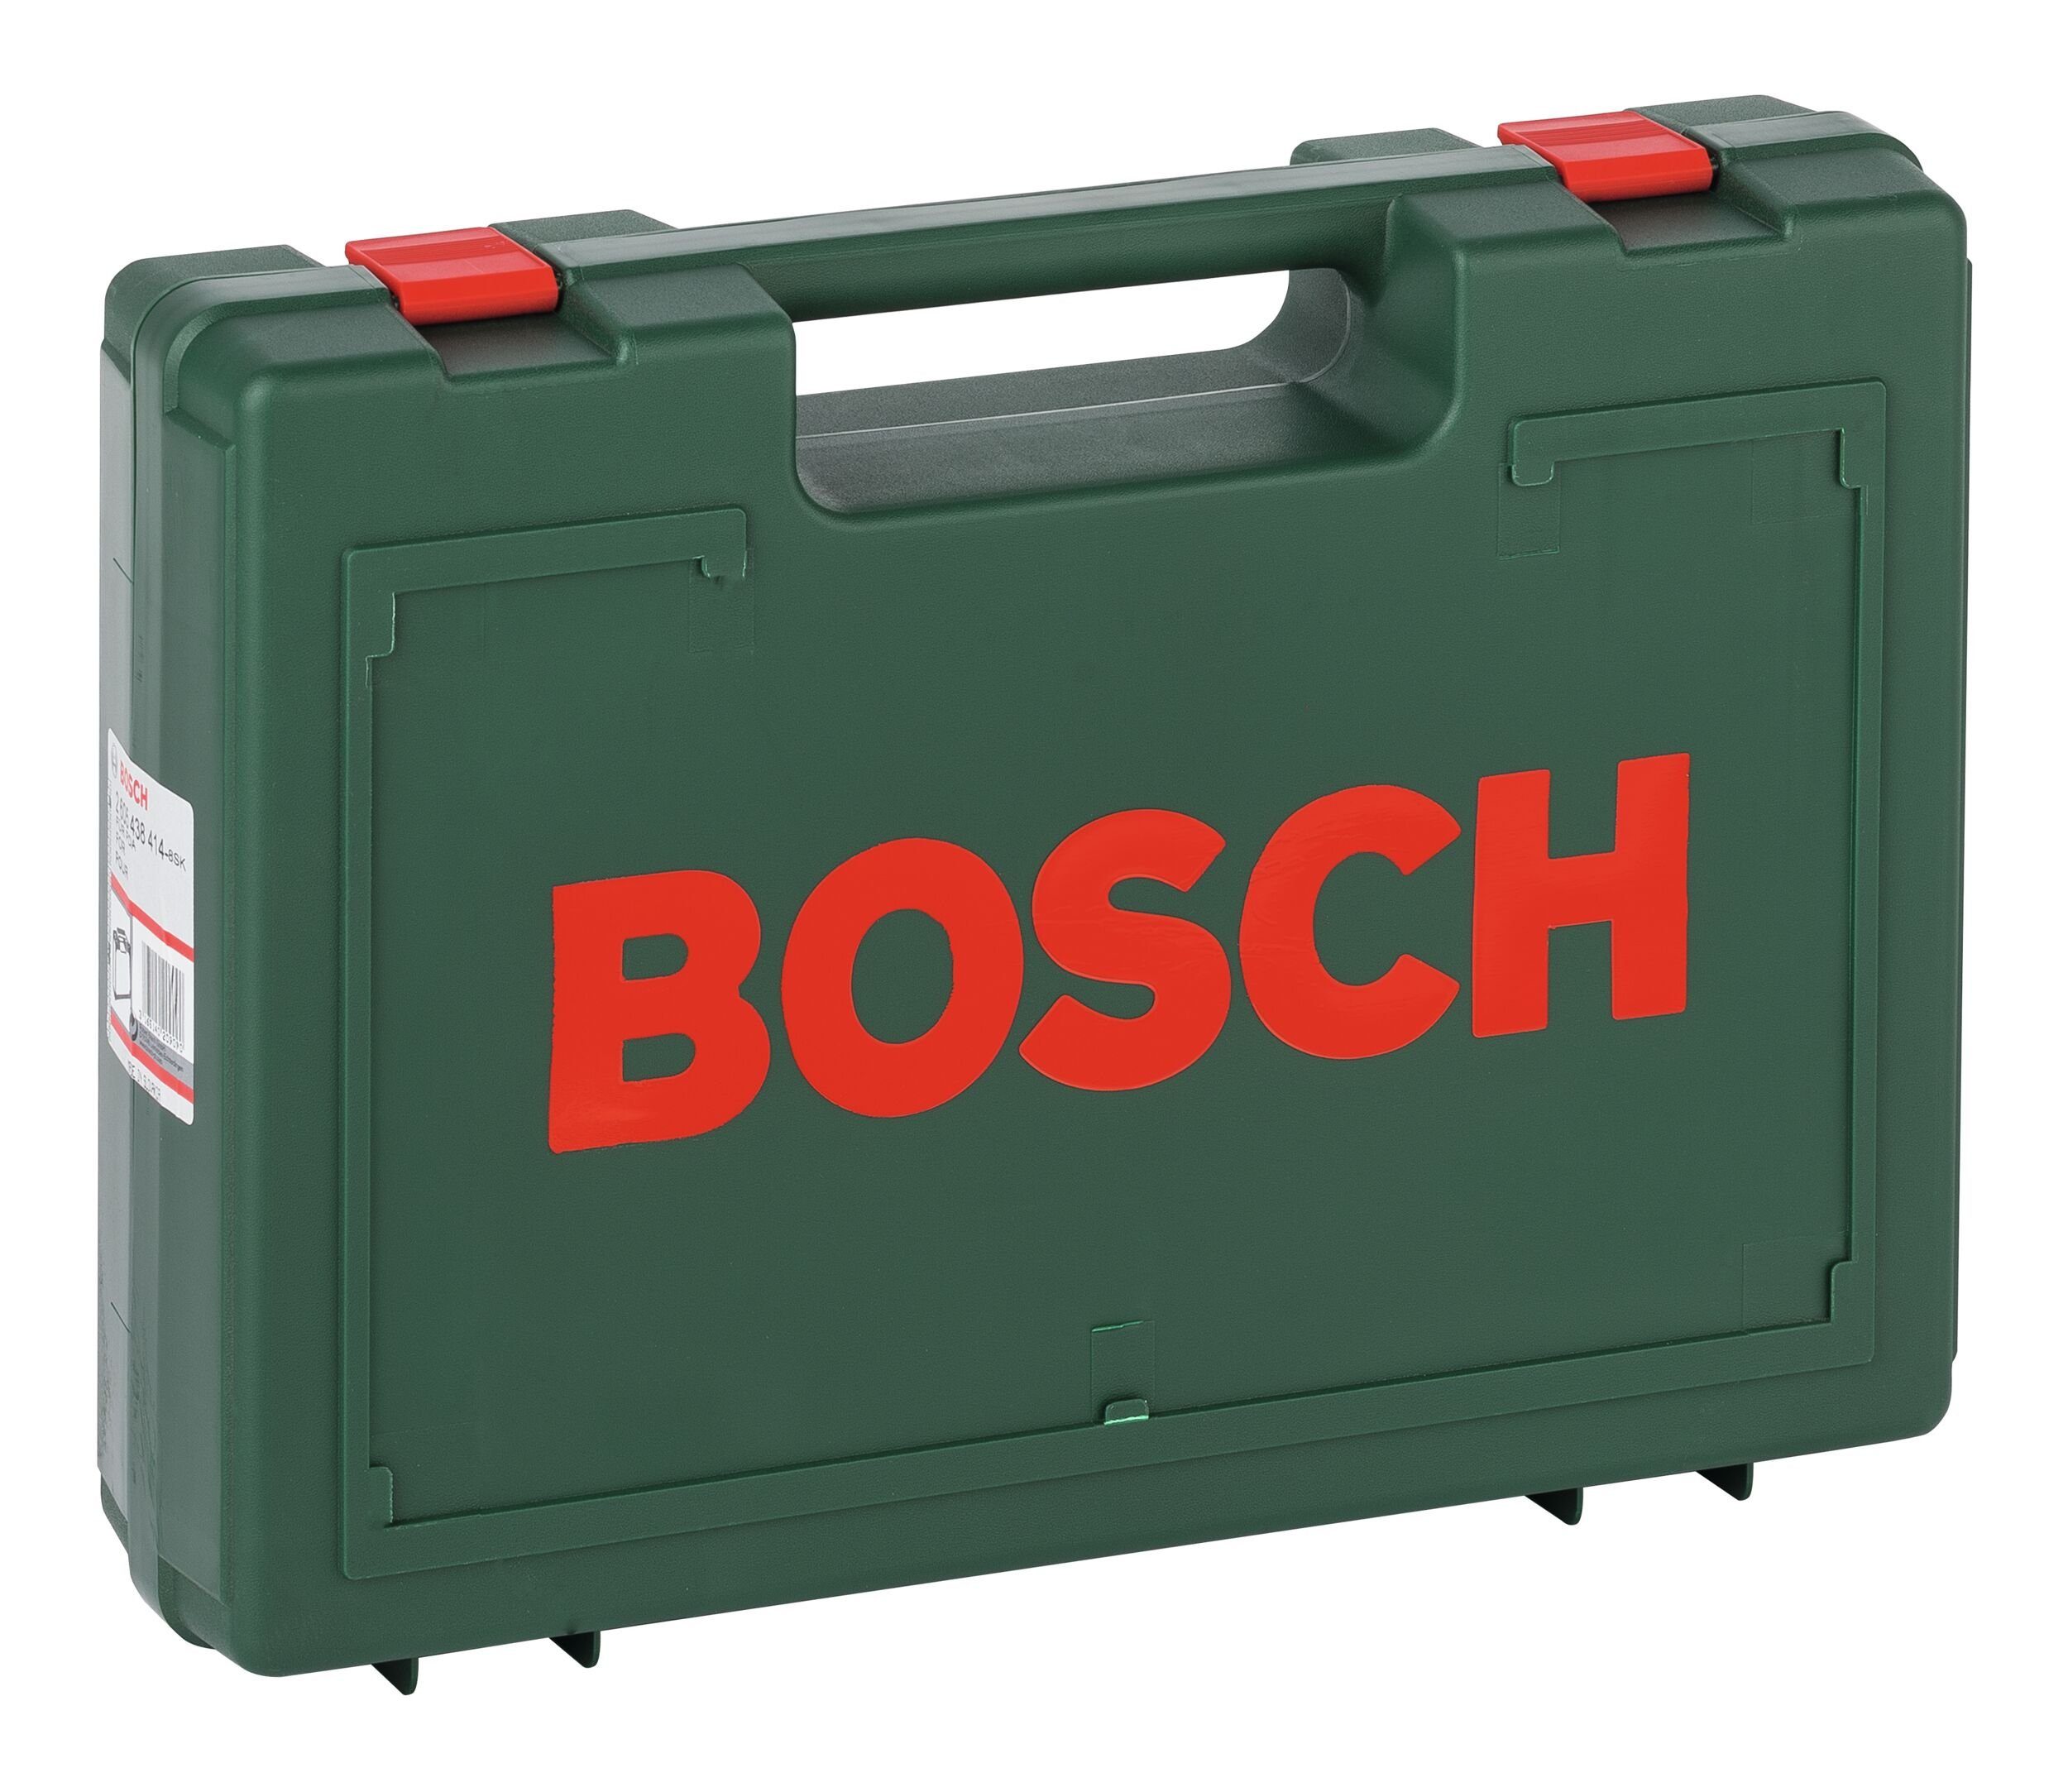 110 - Bosch Werkzeugkoffer, 391 & x x mm Kunststoffkoffer Garden Home 300